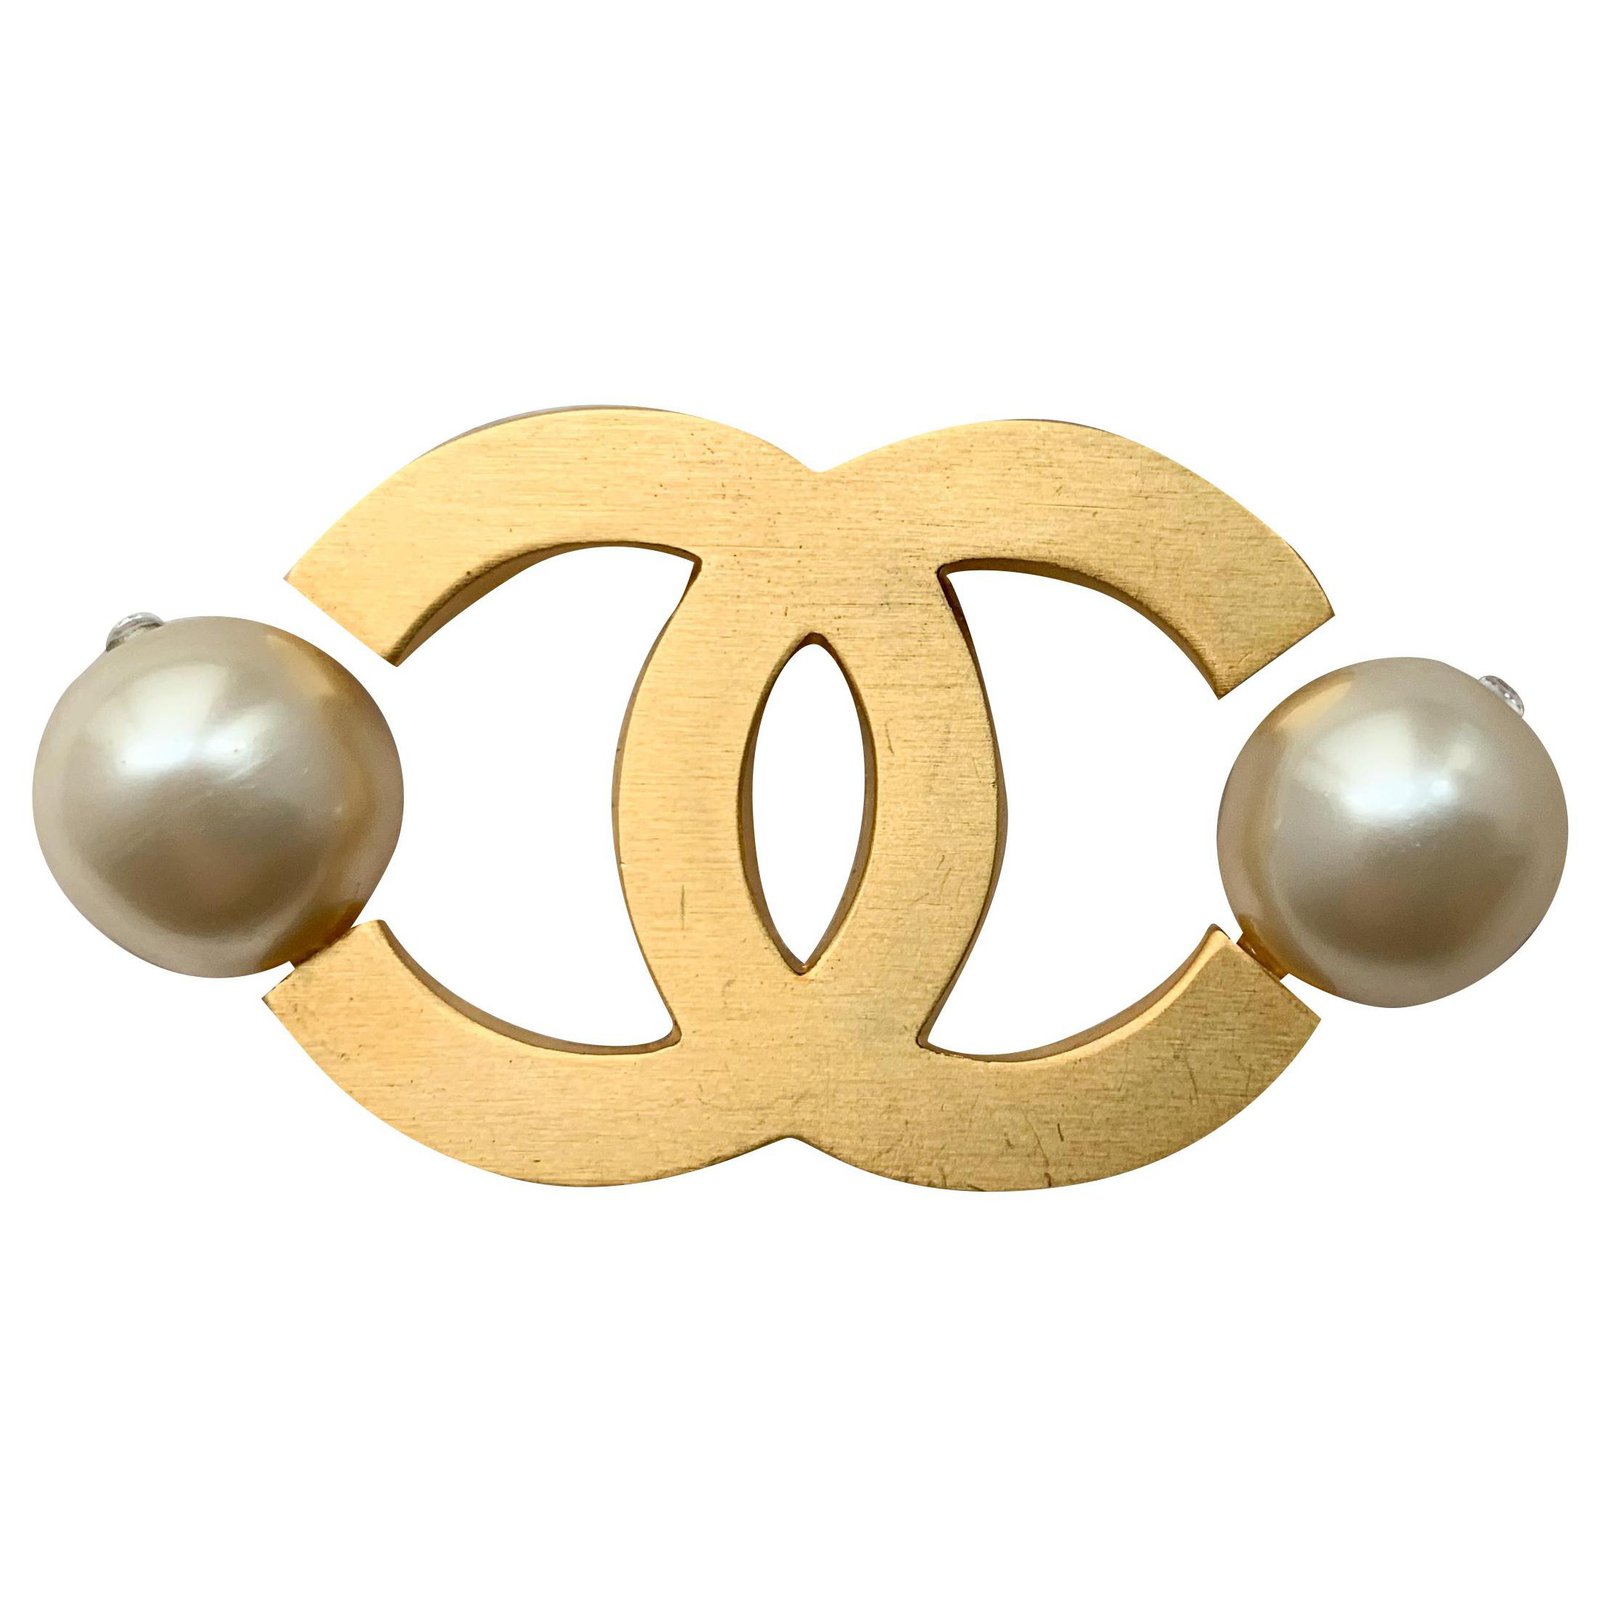 Cc Brosche  Handgemacht aus perlen und strass steine 6.5 cm×5 cm